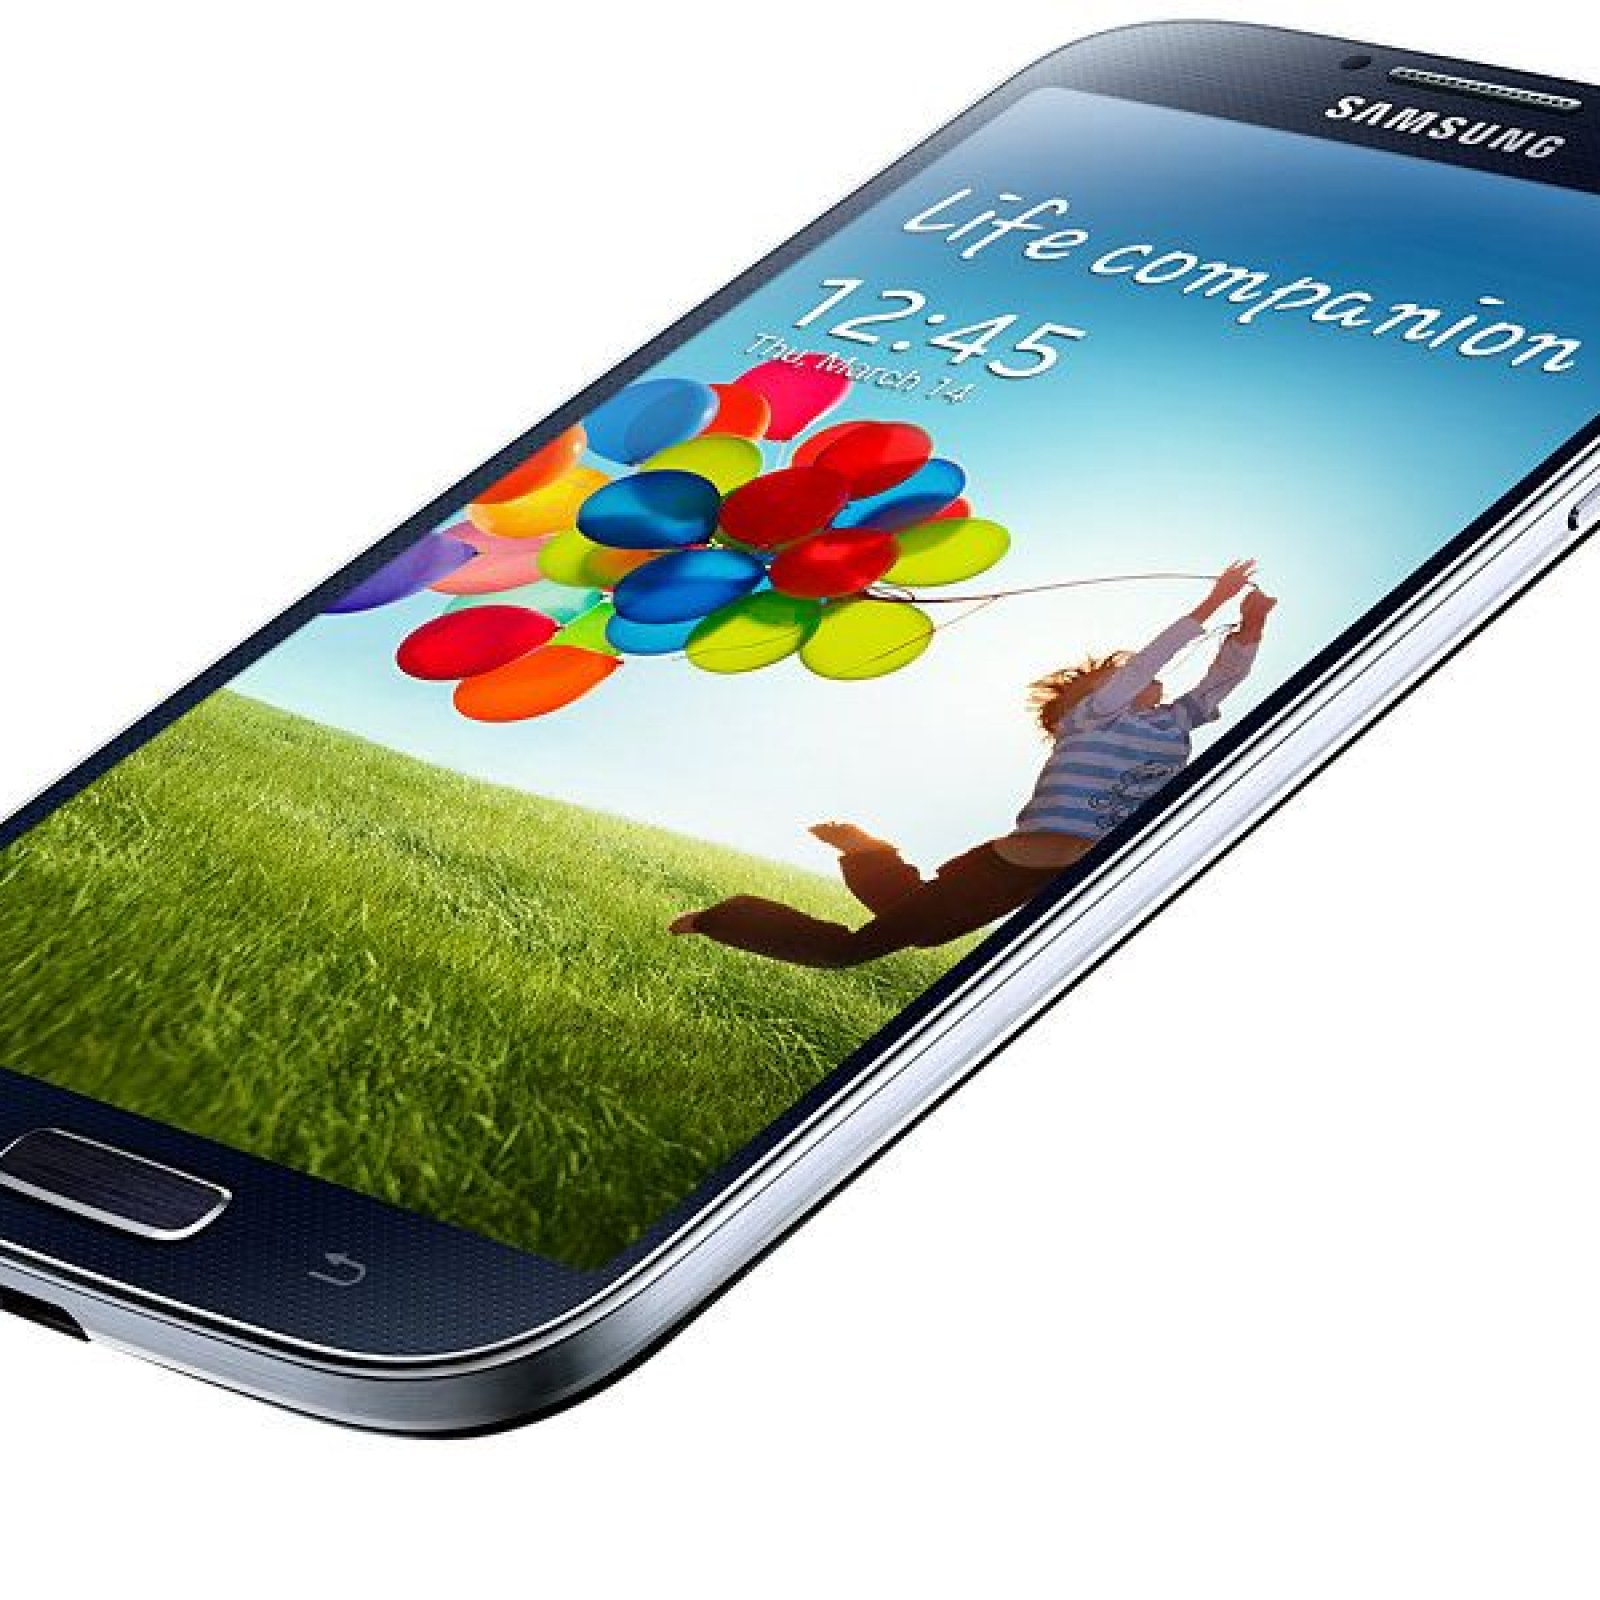 Samsung Galaxy s4. Samsung Galaxy s4 gt-i9500 16gb. Galaxy s4 LTE-A. Самсунг а300.